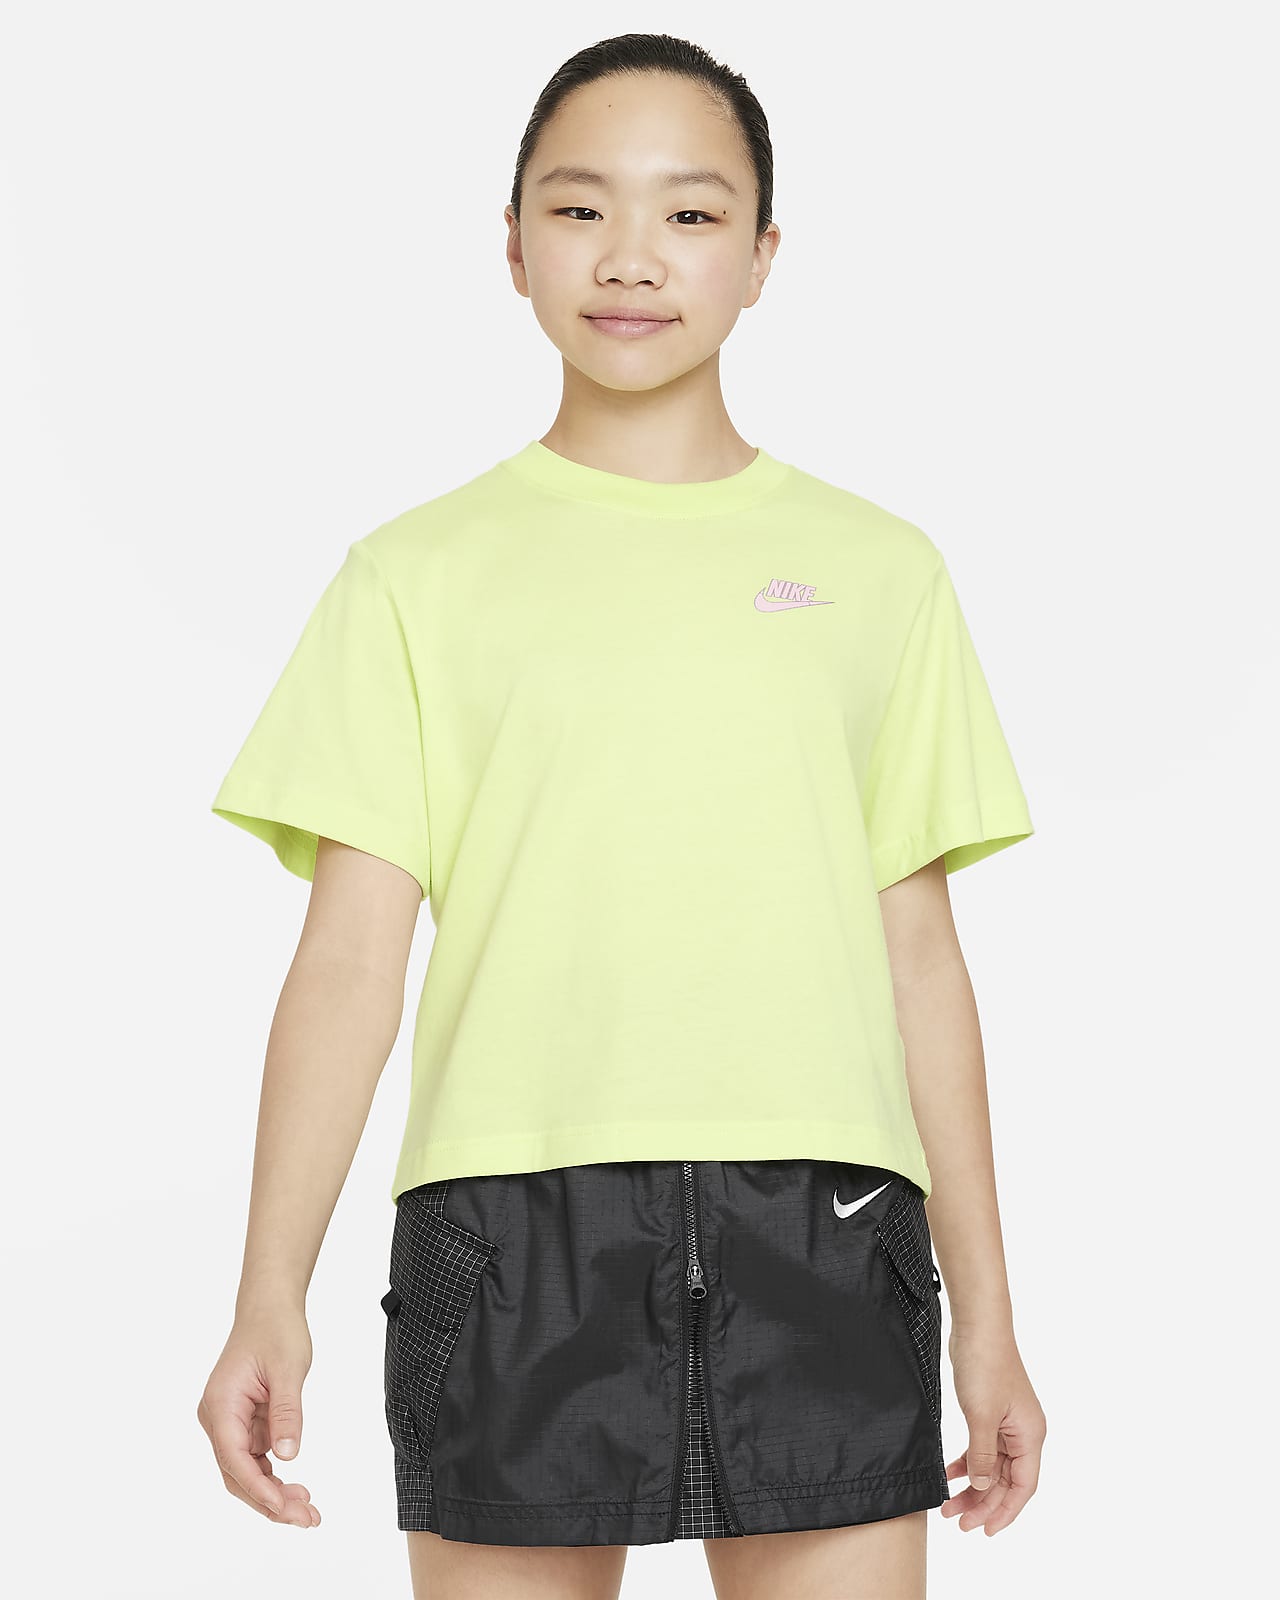 เสื้อยืดเด็กโตทรงบ็อกซี่ Nike Sportswear (หญิง)